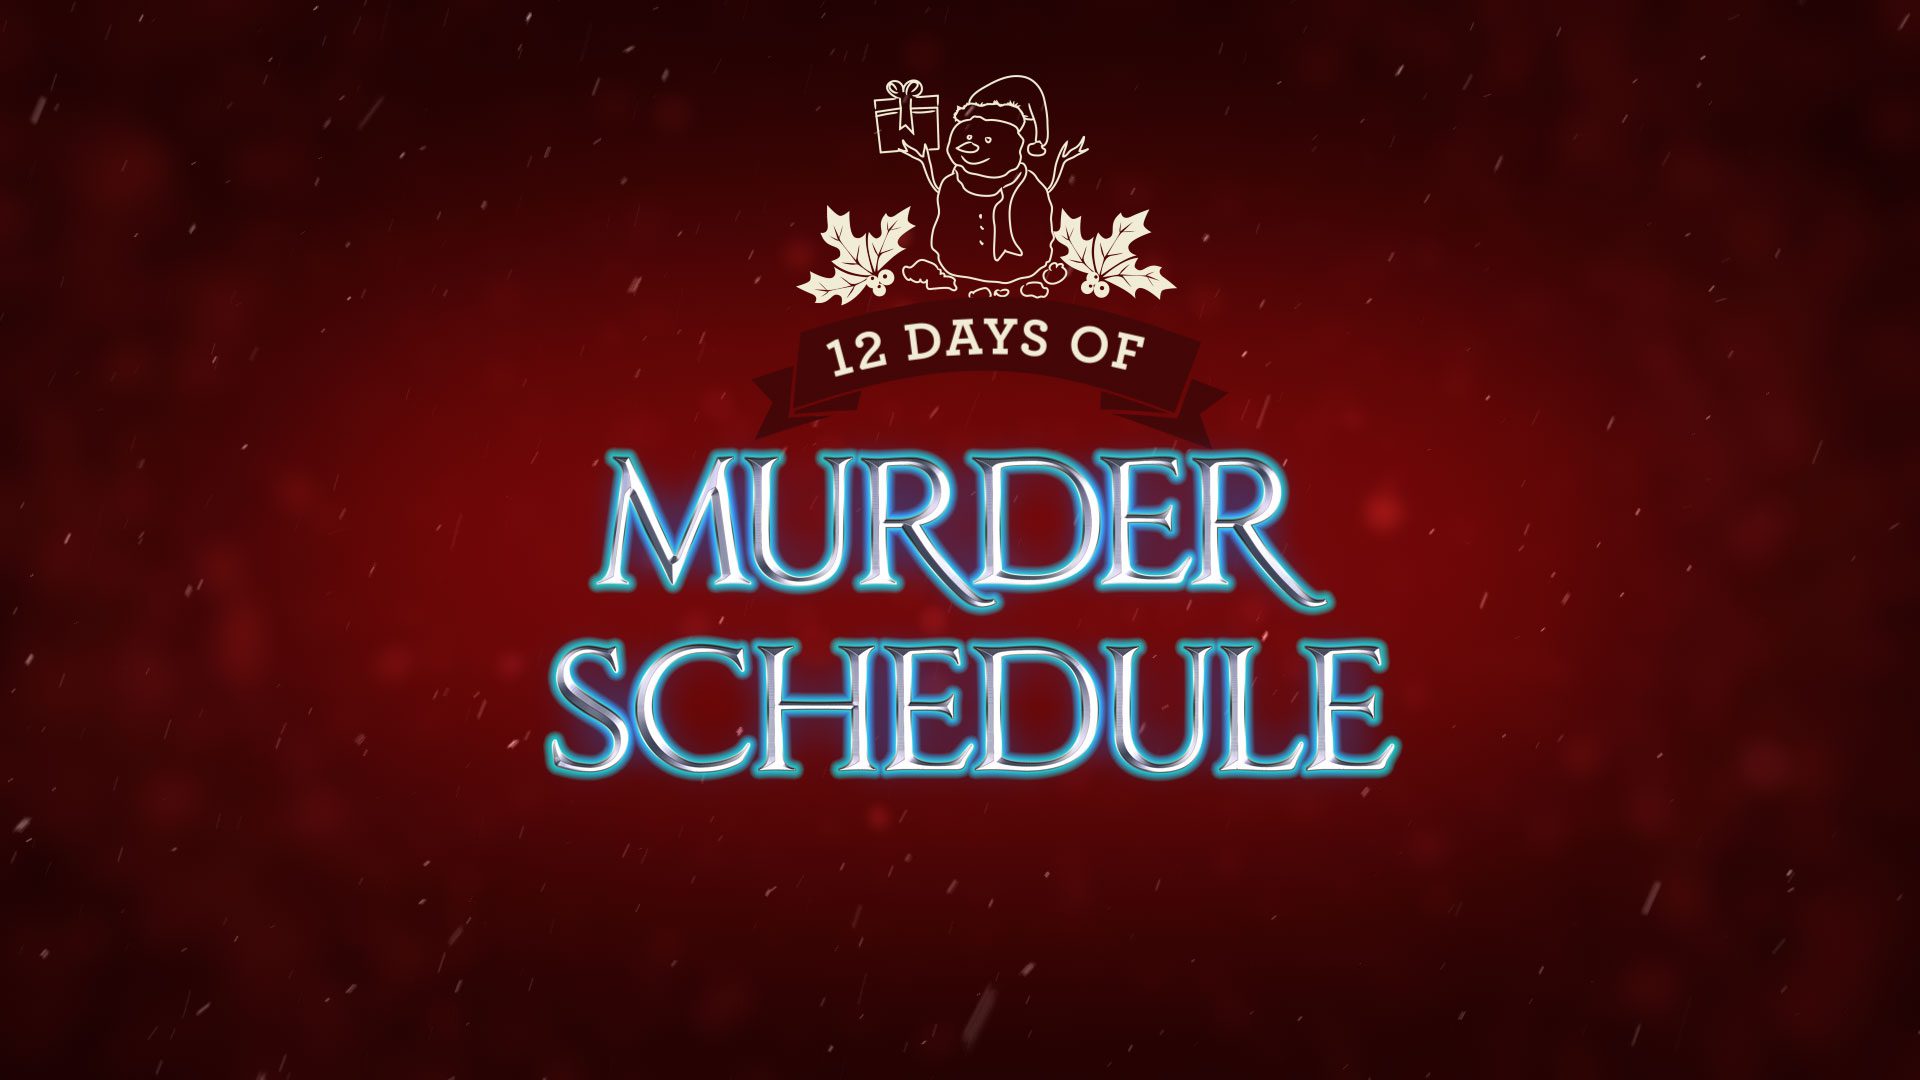 12 days of murder schedule promo 9 1920x1080 2